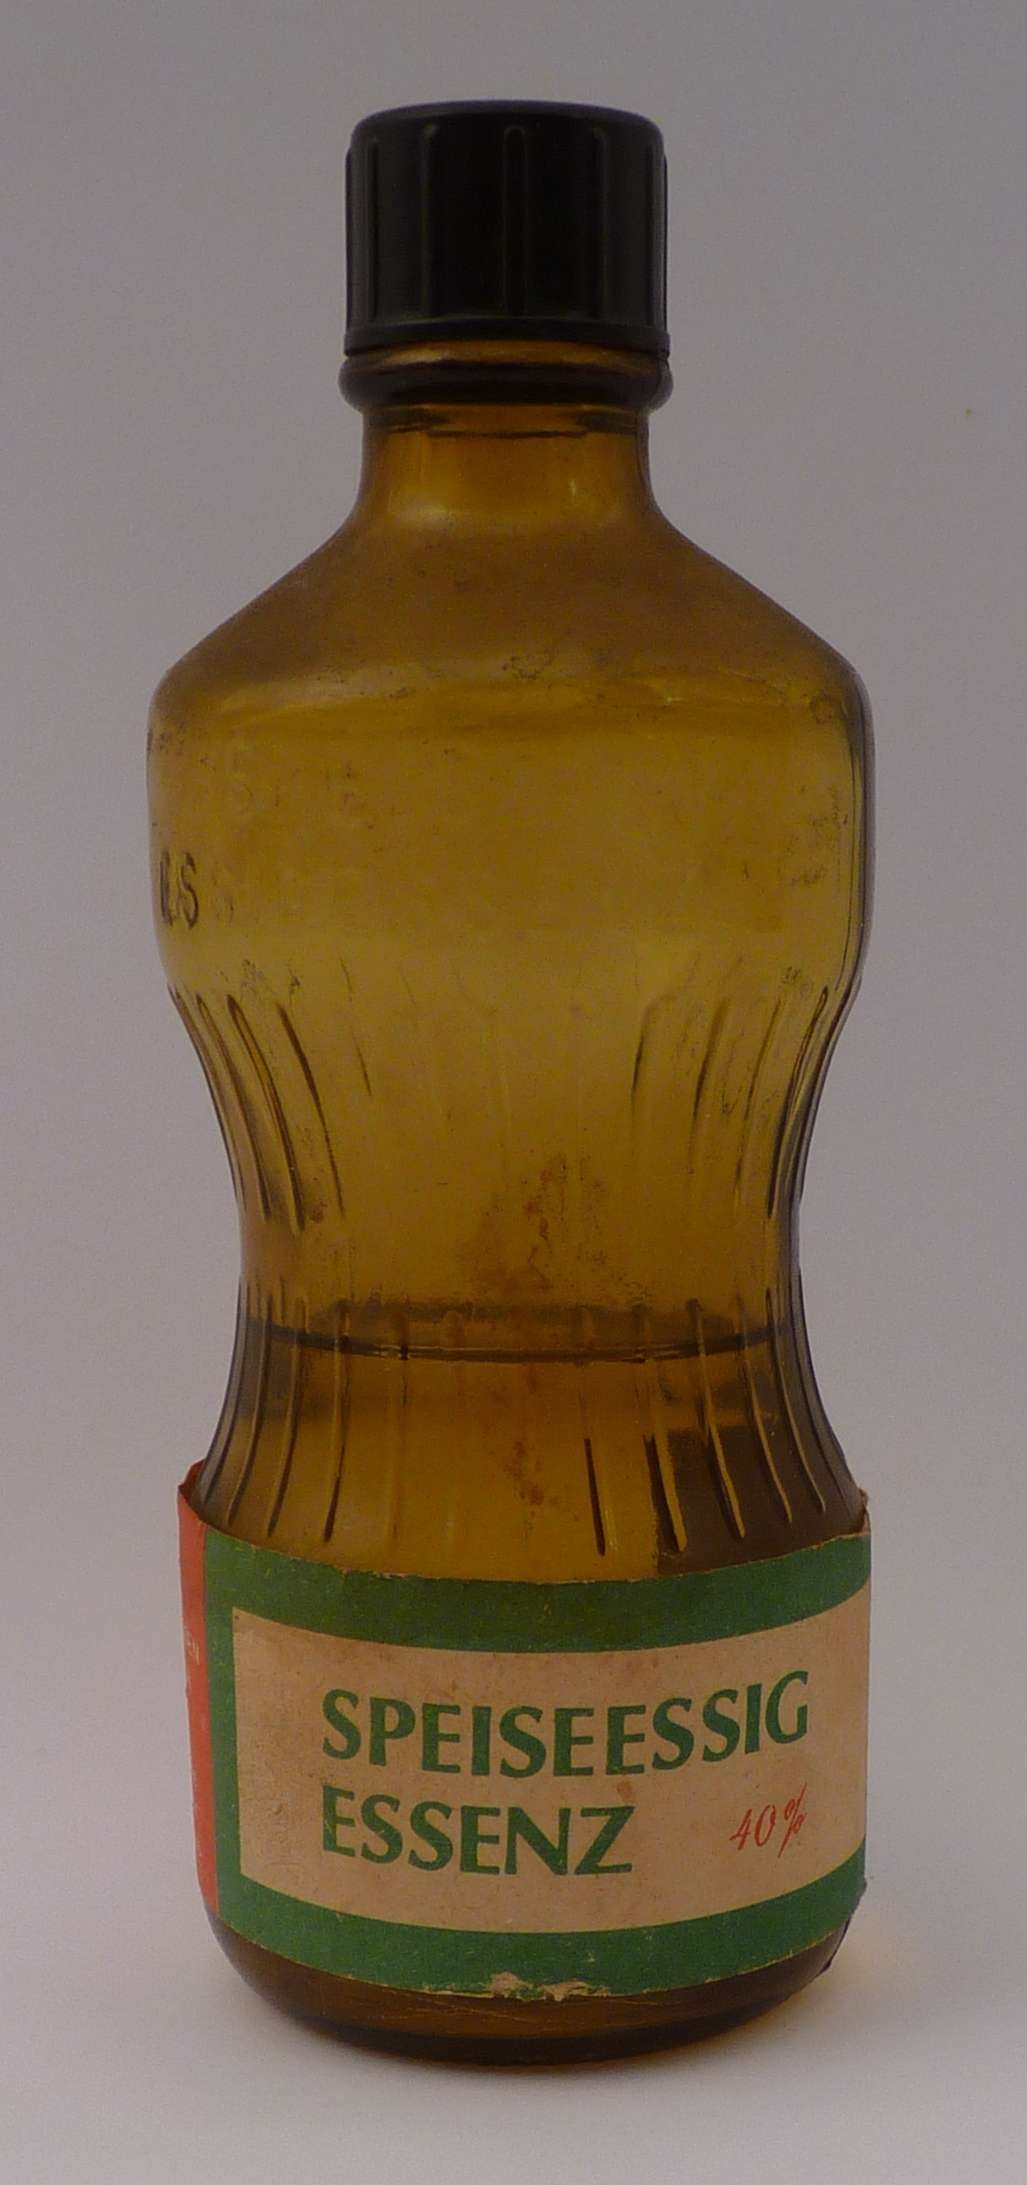 Flasche mit Speiseessig-Essenz (Kreismuseum Bitterfeld CC BY-NC-SA)